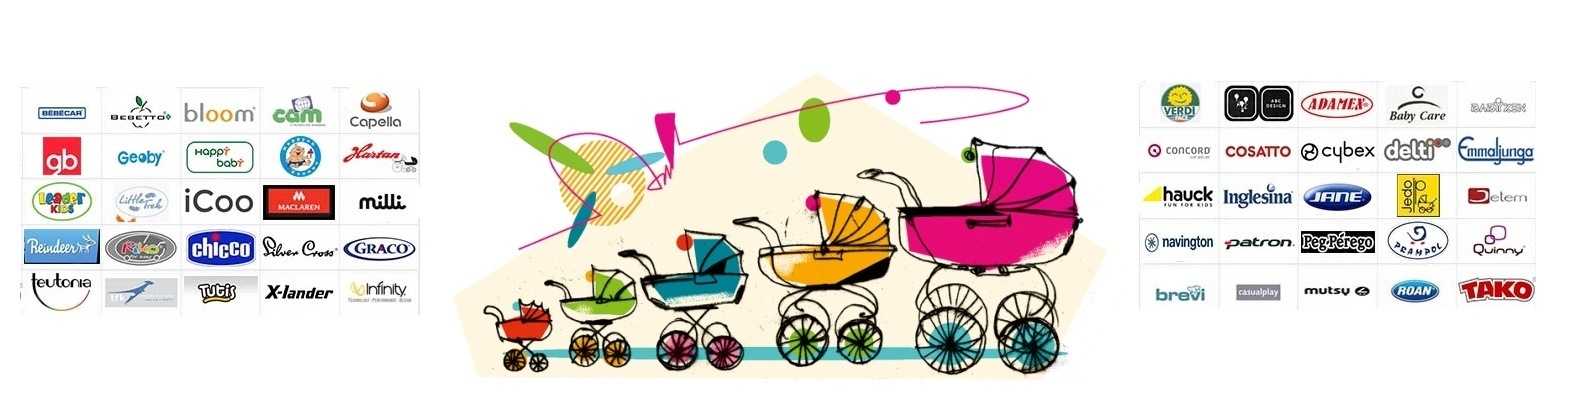 Покупаем коляску для новорожденного ребенка: как выбрать наиболее подходящую именно вам?